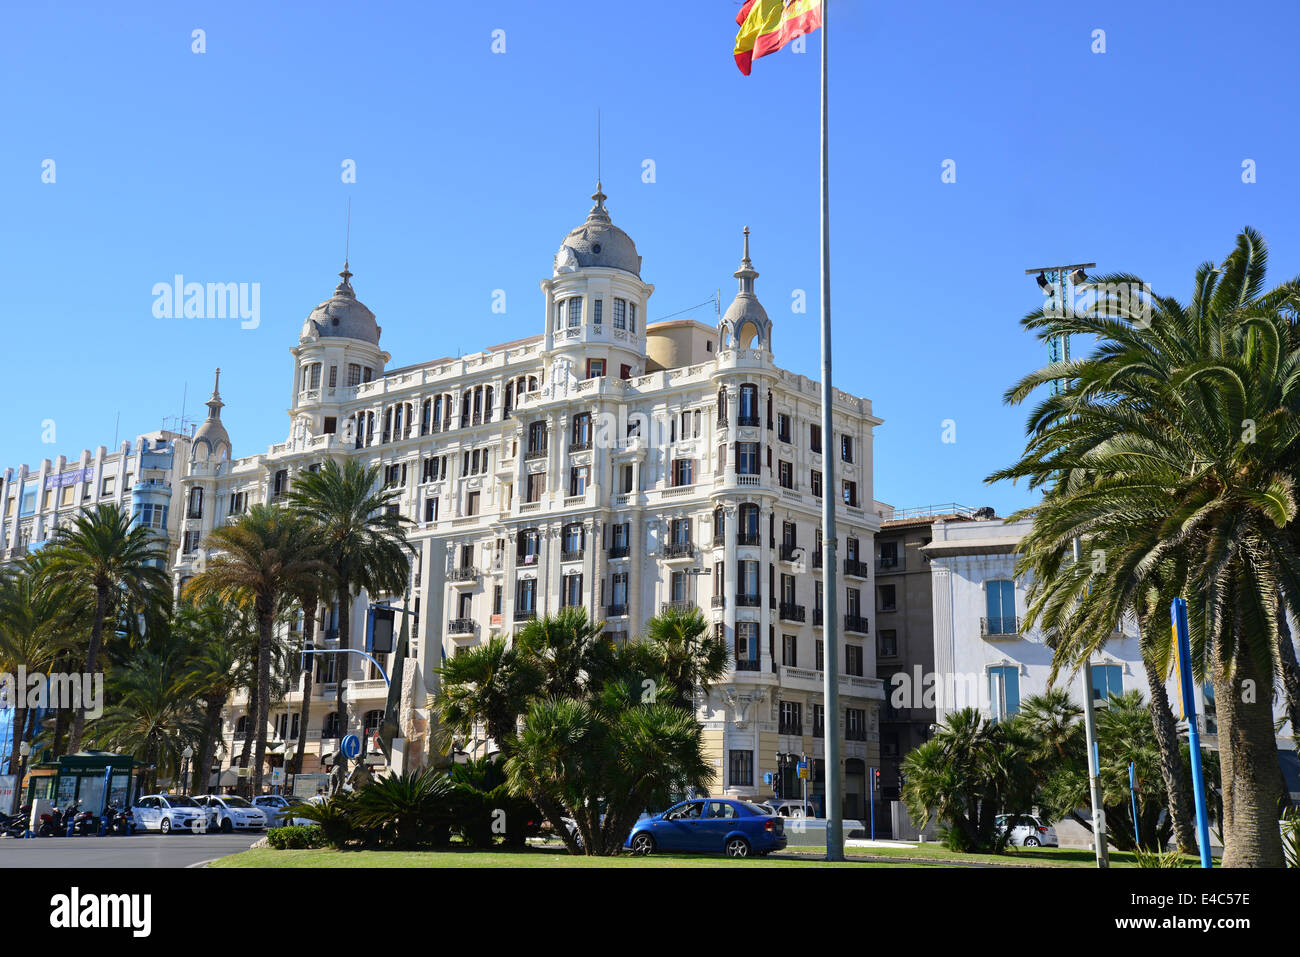 Plaza Puerta del Mar, Alicante, Costa Blanca, Alicante Province ...